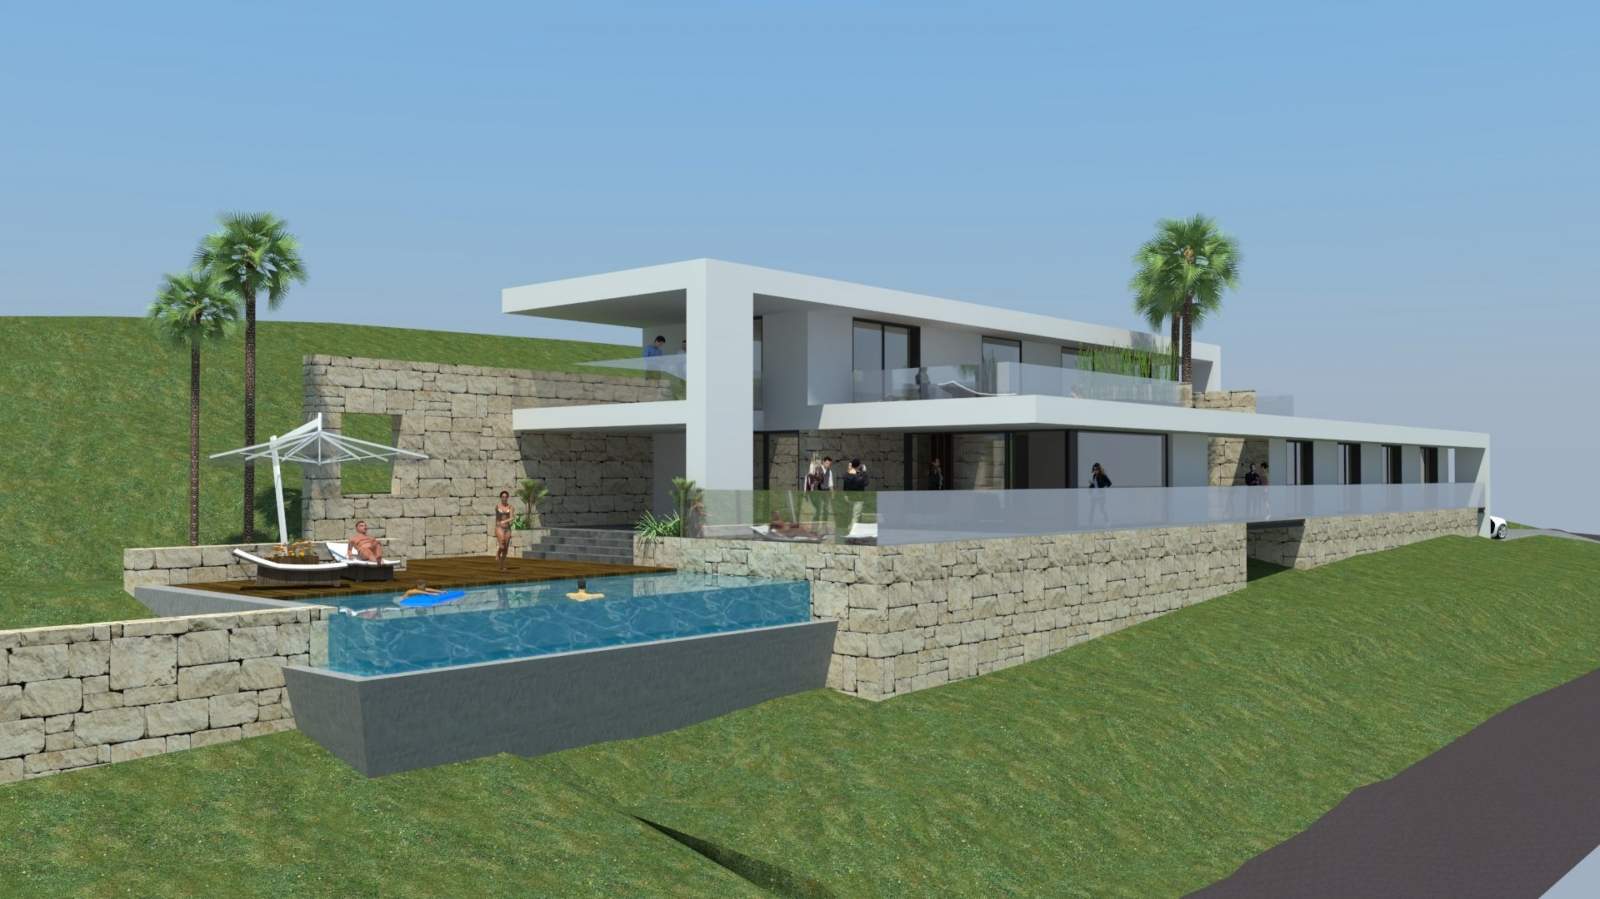 Grundstücke zum Verkauf zu bauen, eine villa, Meerblick, Loulé, Algarve, Portugal_120881